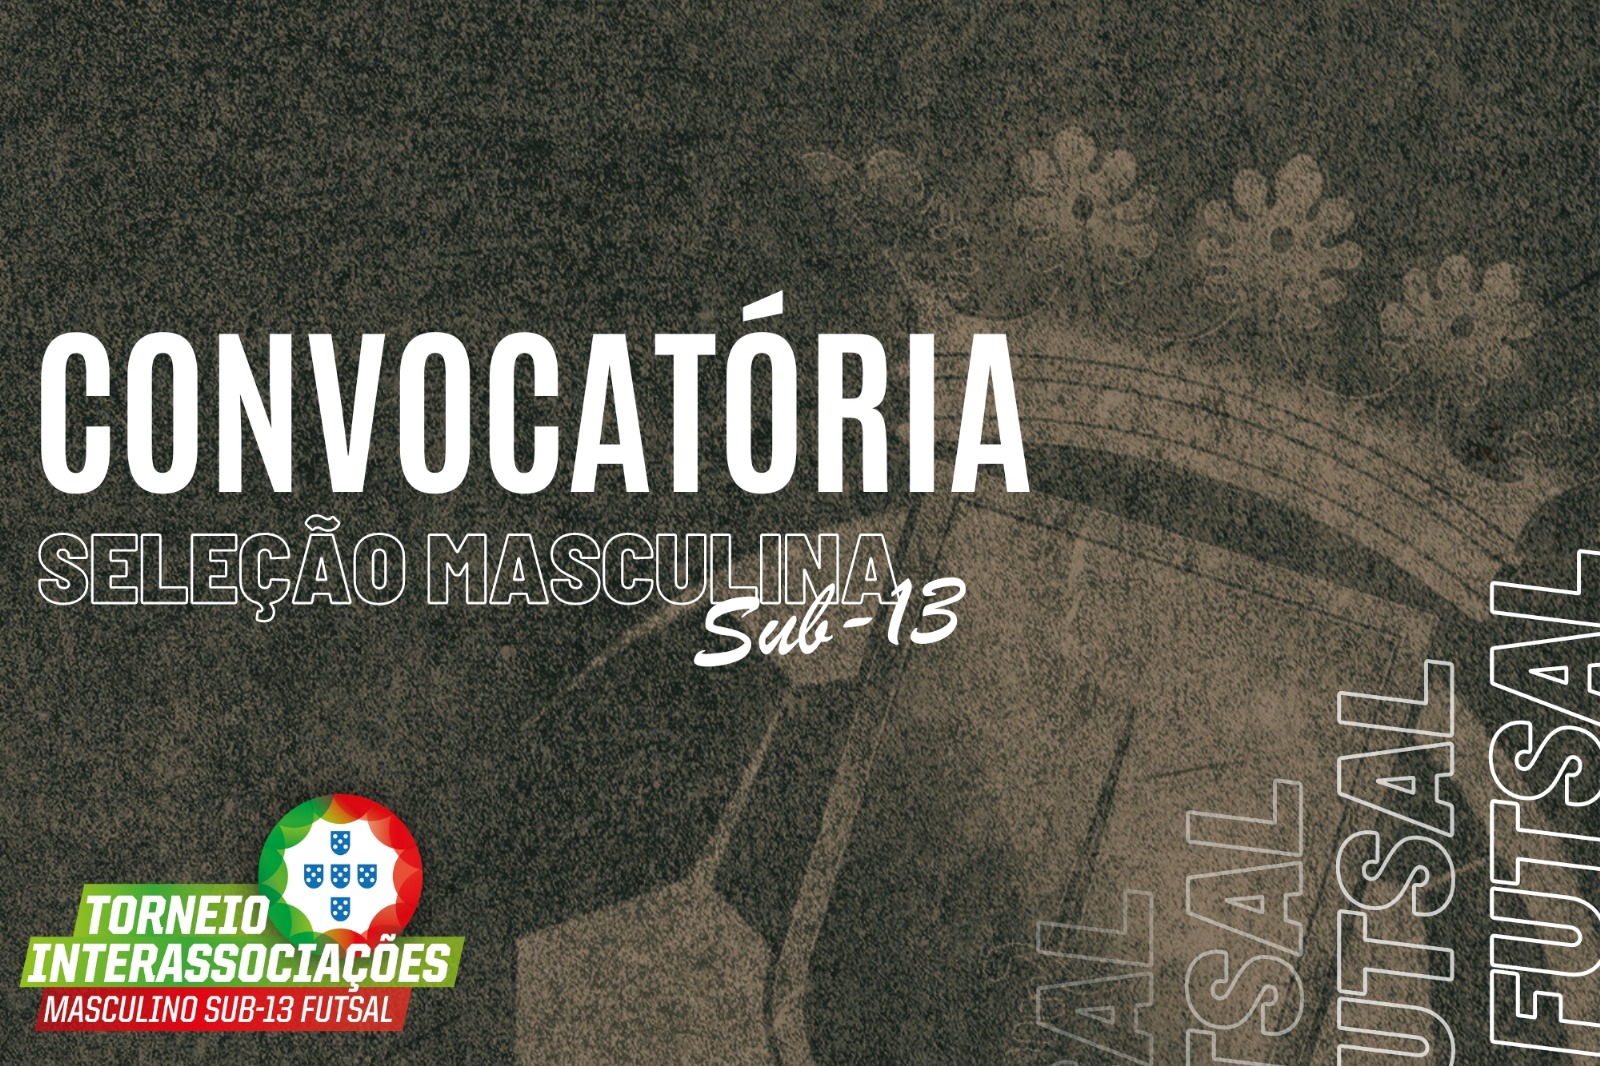 Convocatória | Torneio Interassociações de Futsal Masculino de Sub-13